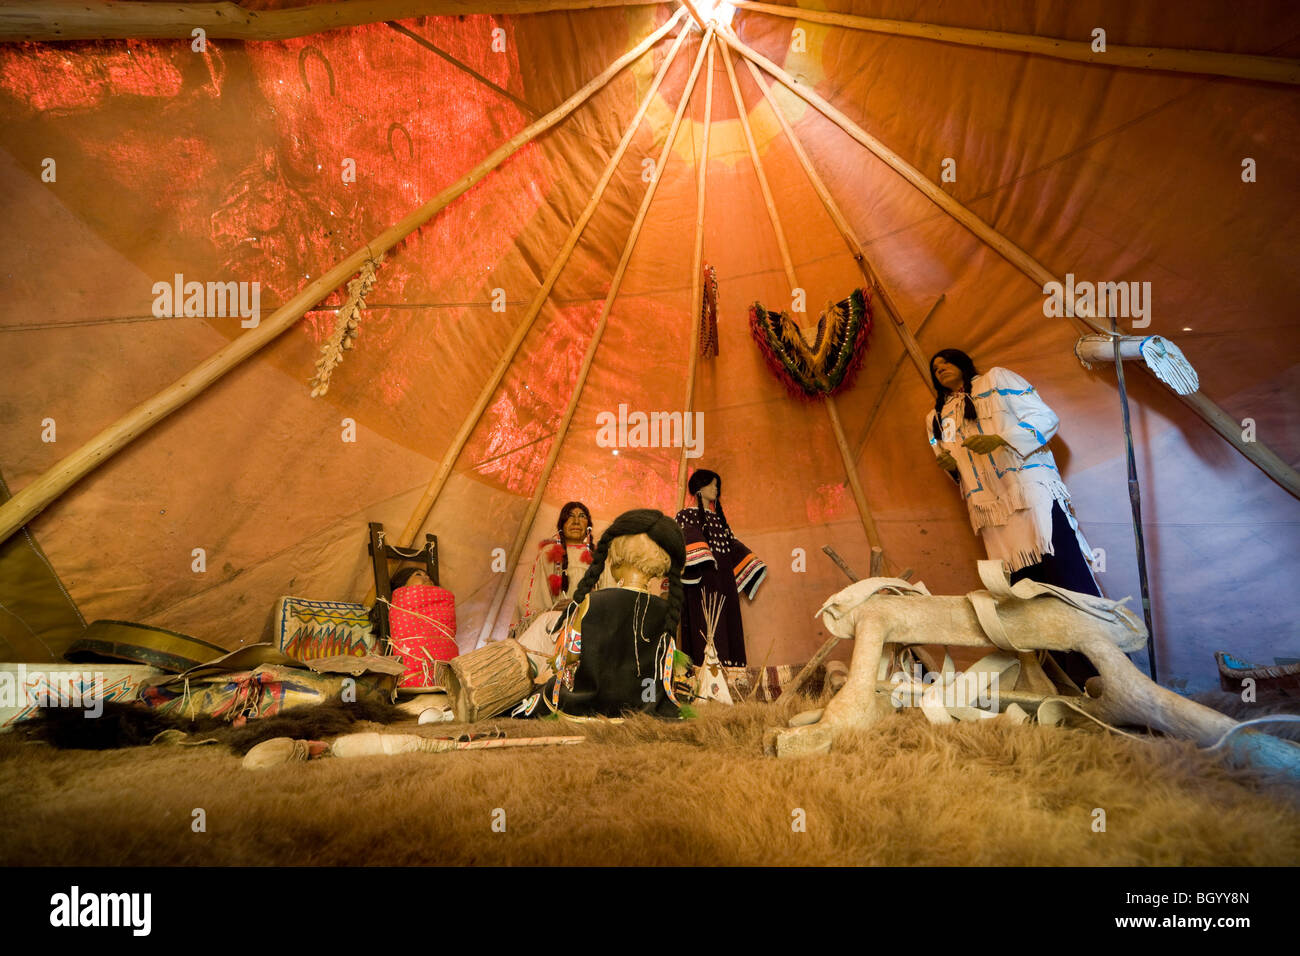 Dentro de Lakota, Americanos Nativos, Tipi, Tepee, tienda. La exhibición del Museo, mostrar en el Crazy Horse Memorial, Dakota del Sur. Foto de stock